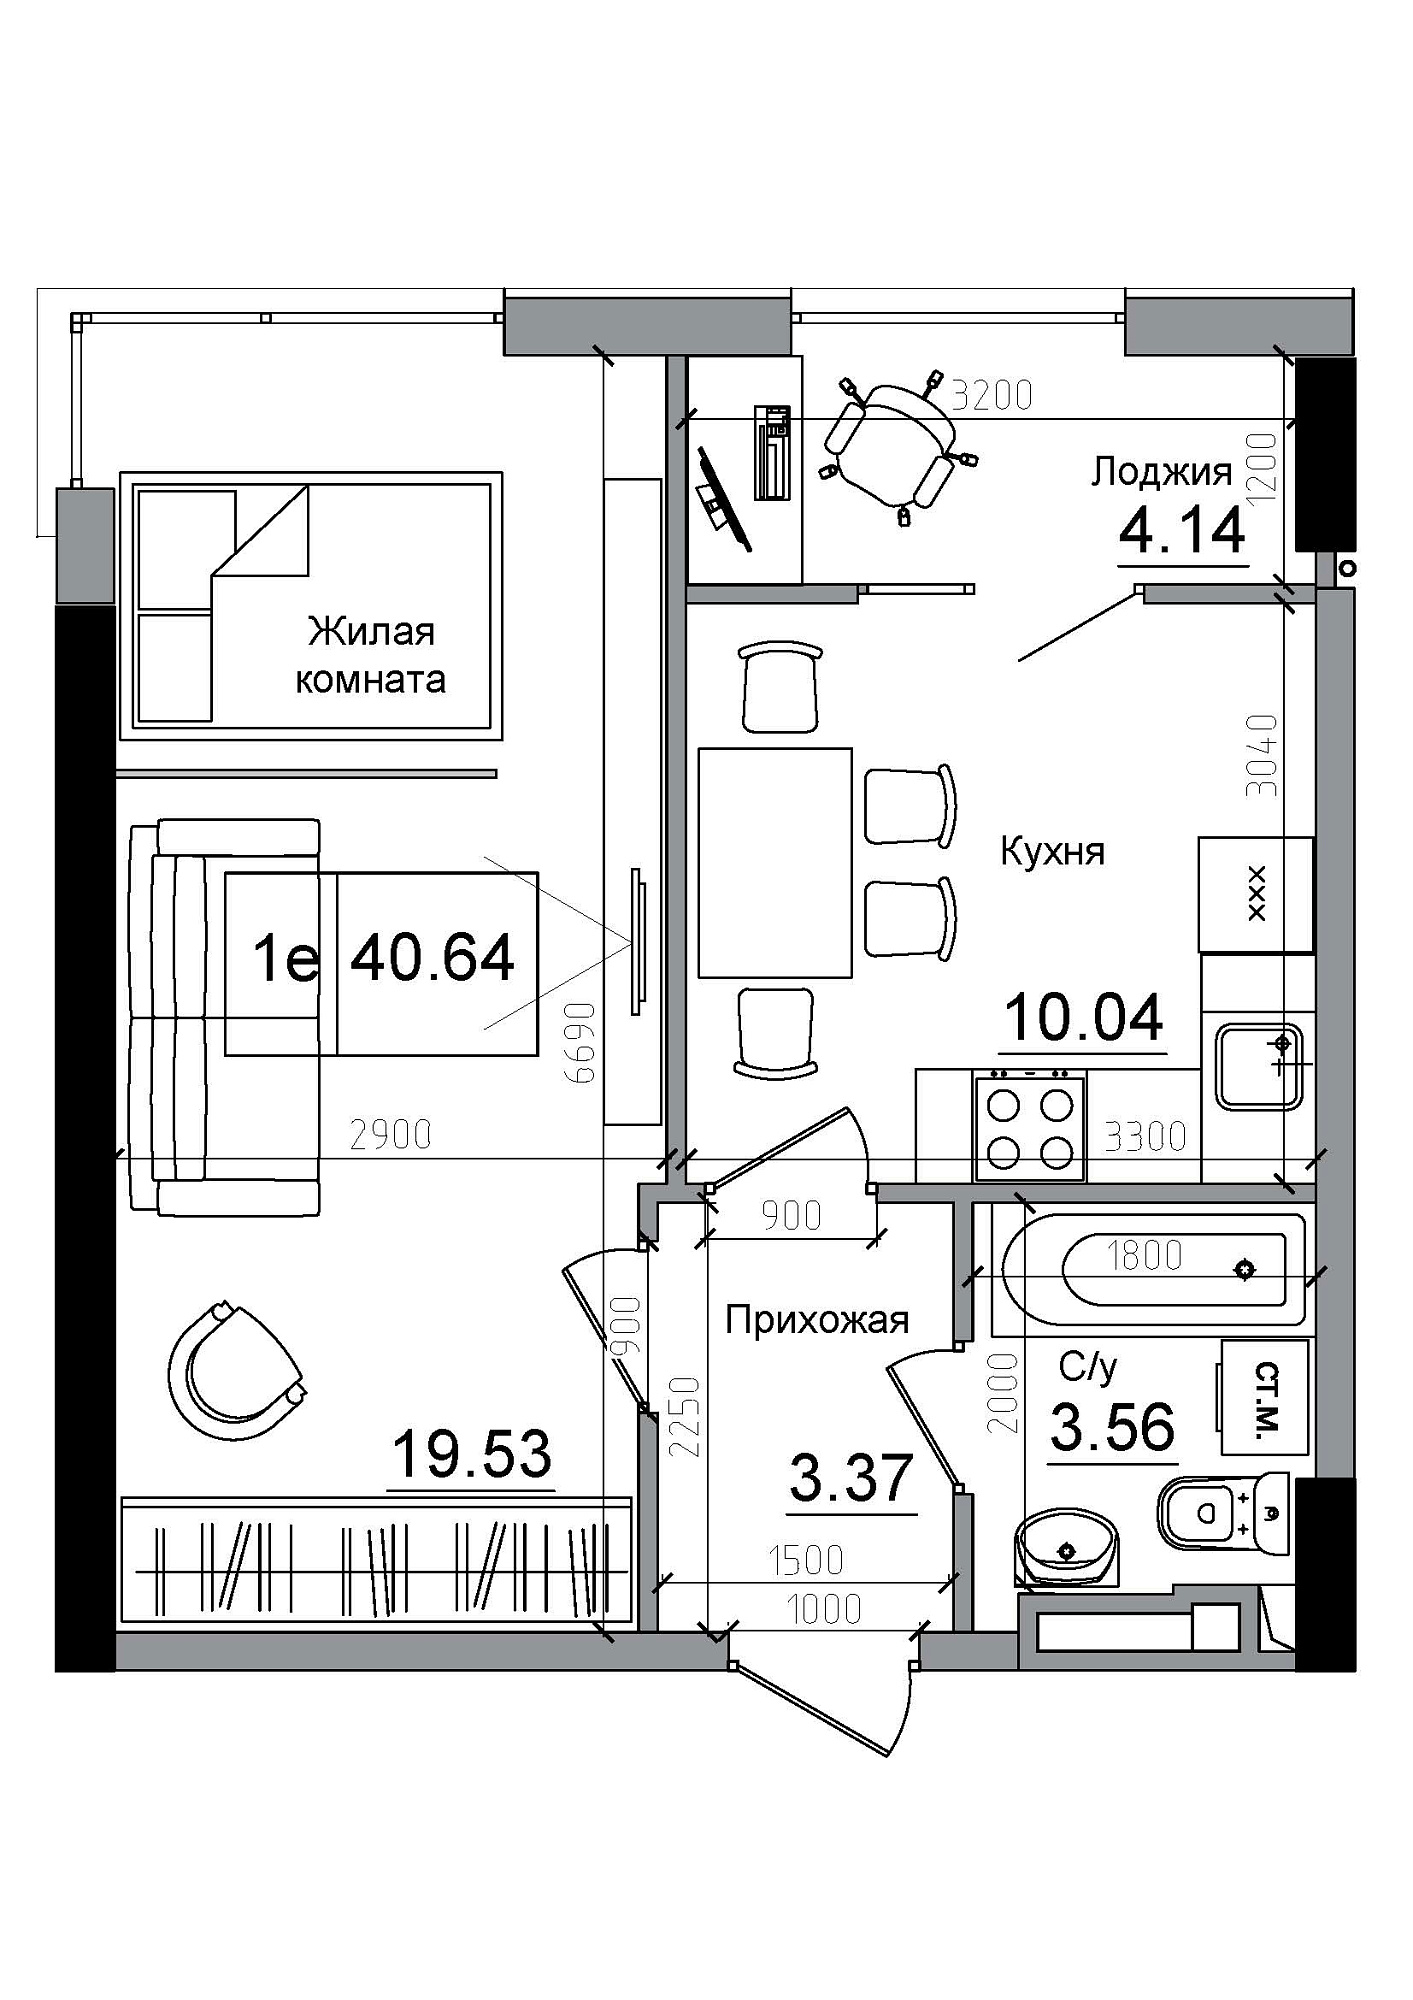 Планировка 1-к квартира площей 40.64м2, AB-12-08/00006.